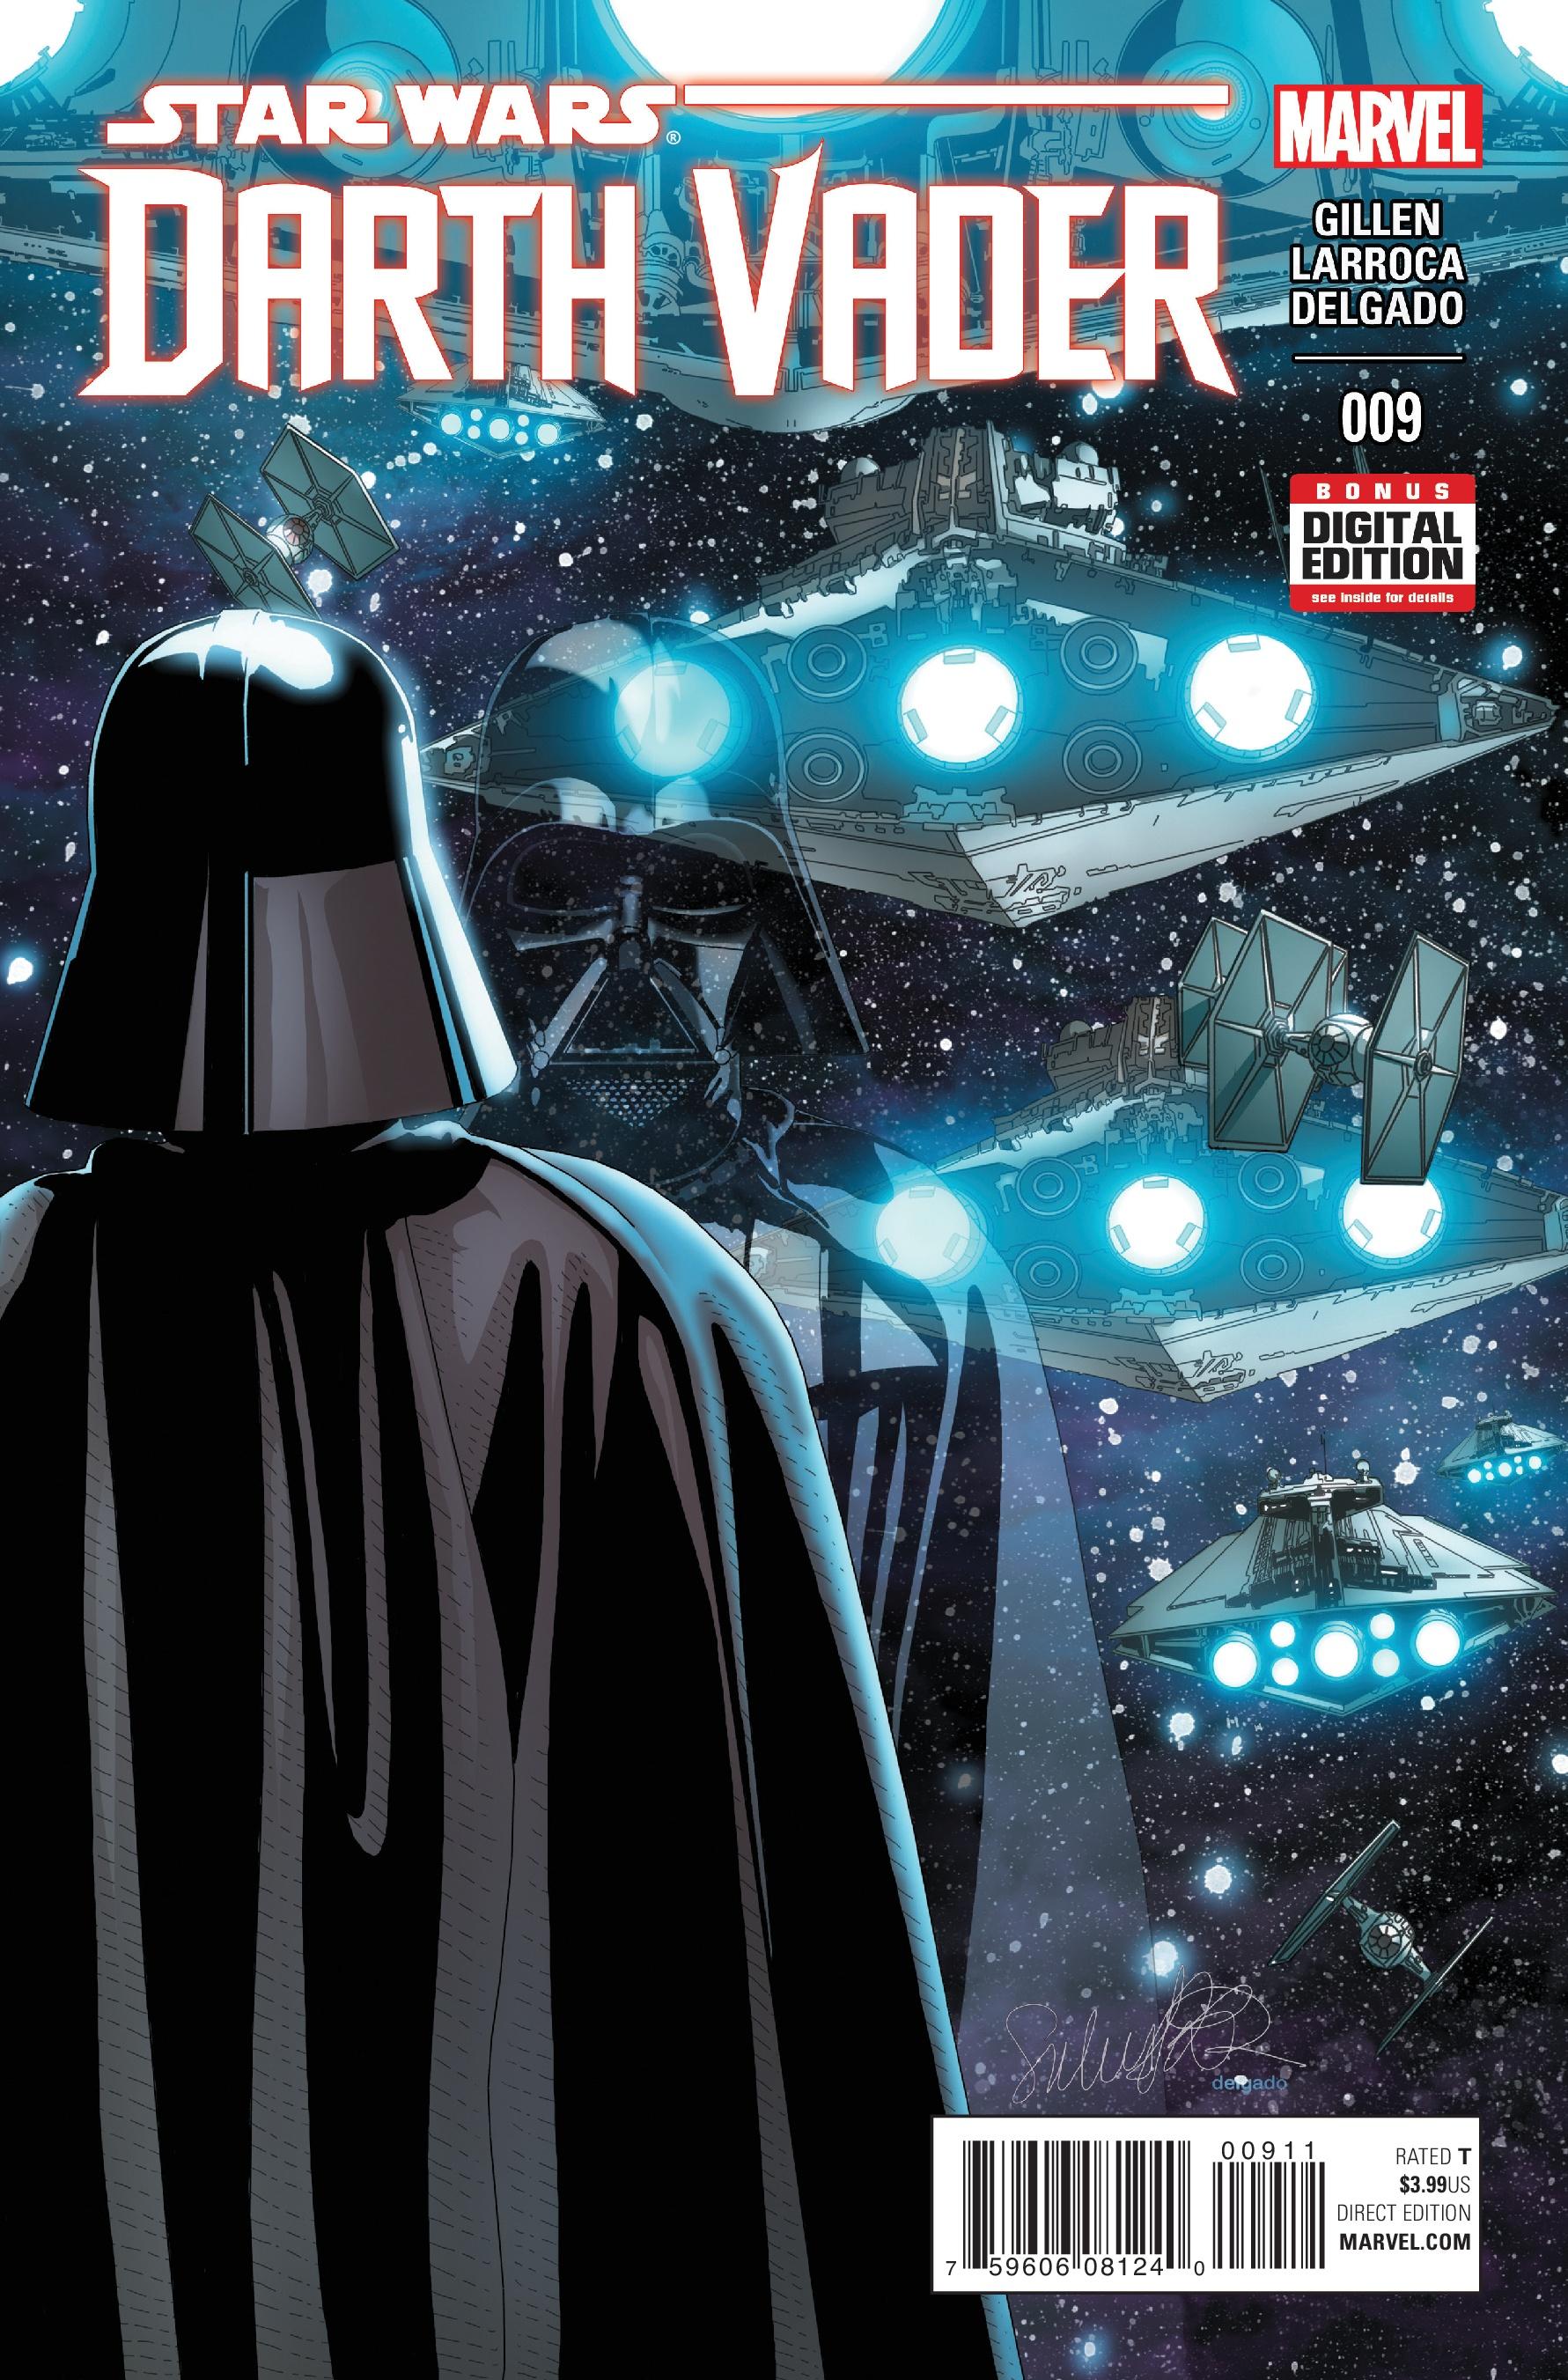 Darth Vader Vol. 1 #9